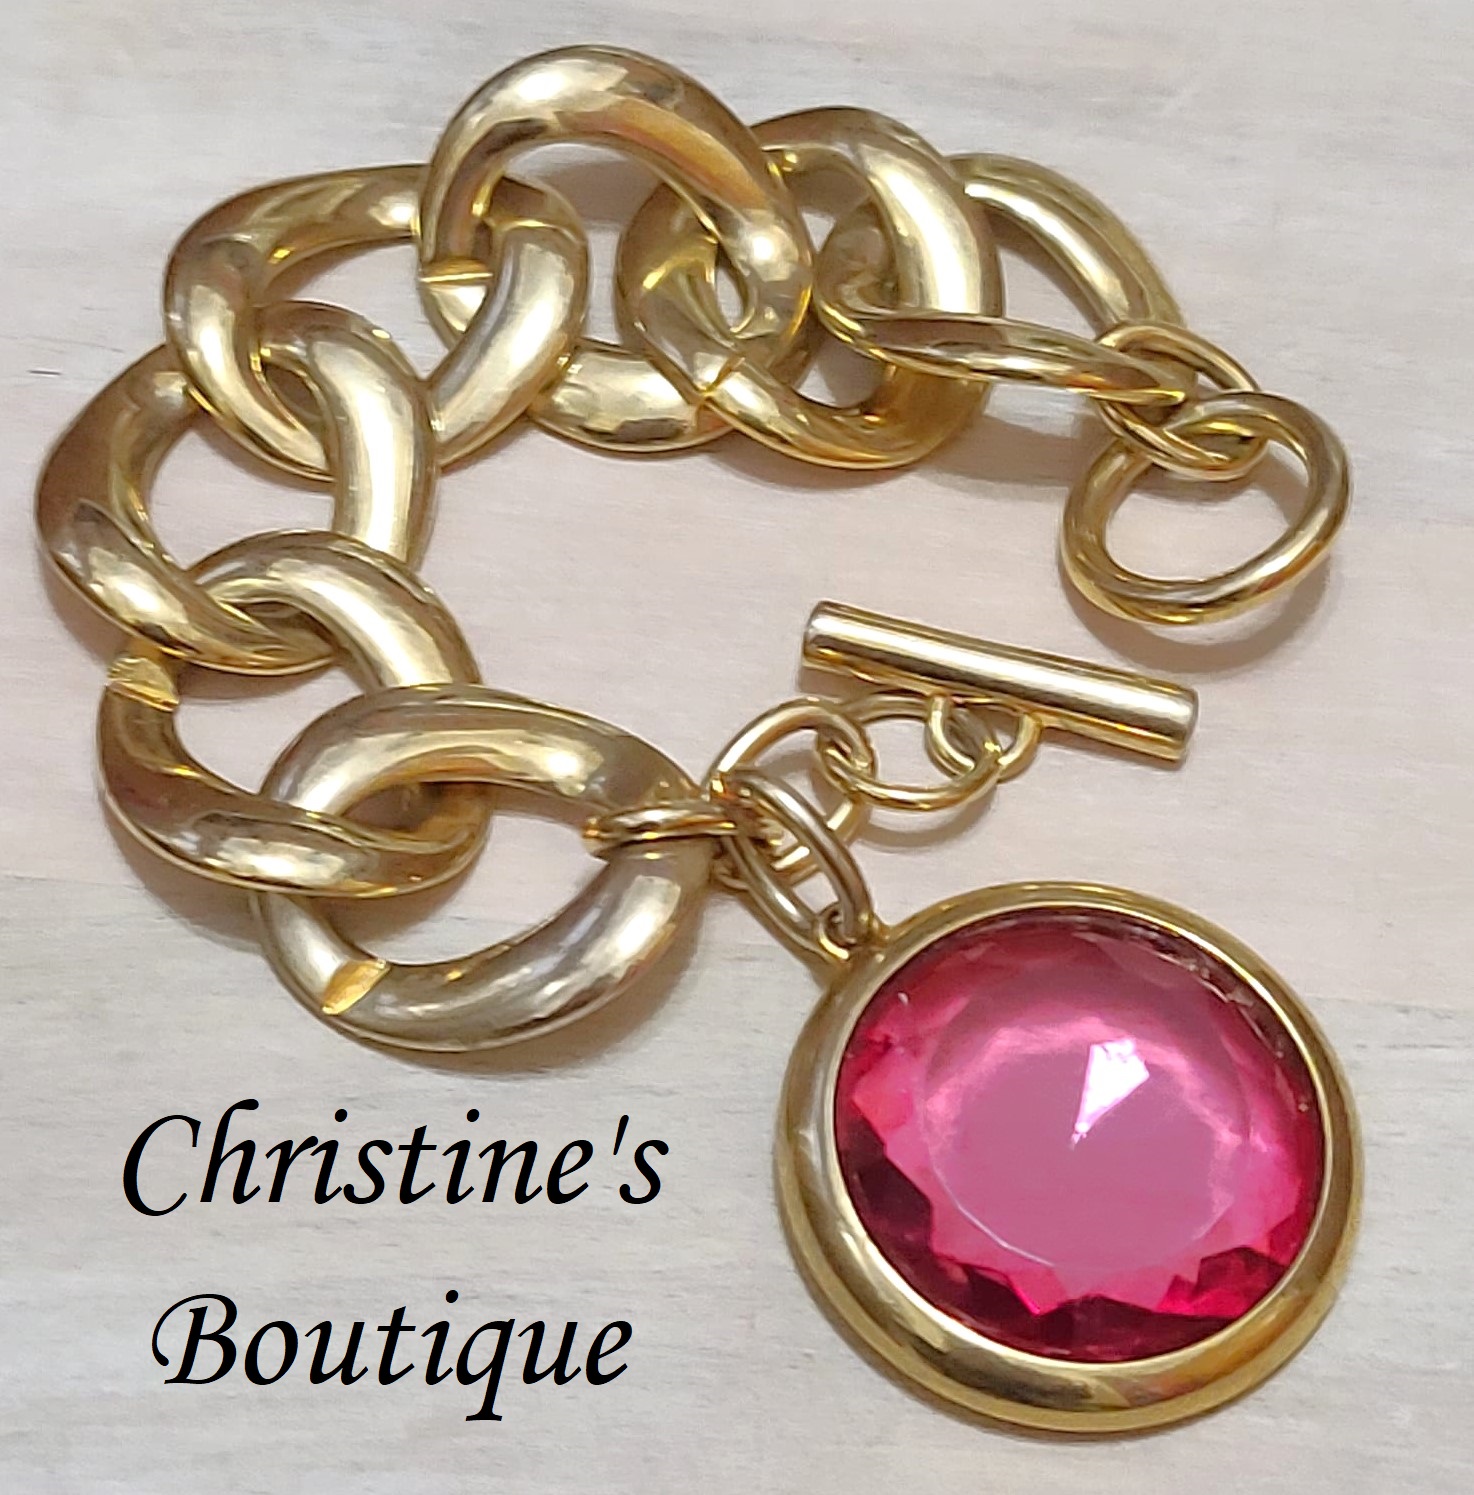 Charm bracelet, vintage, large goldtone link, with large glass pink dangle charm